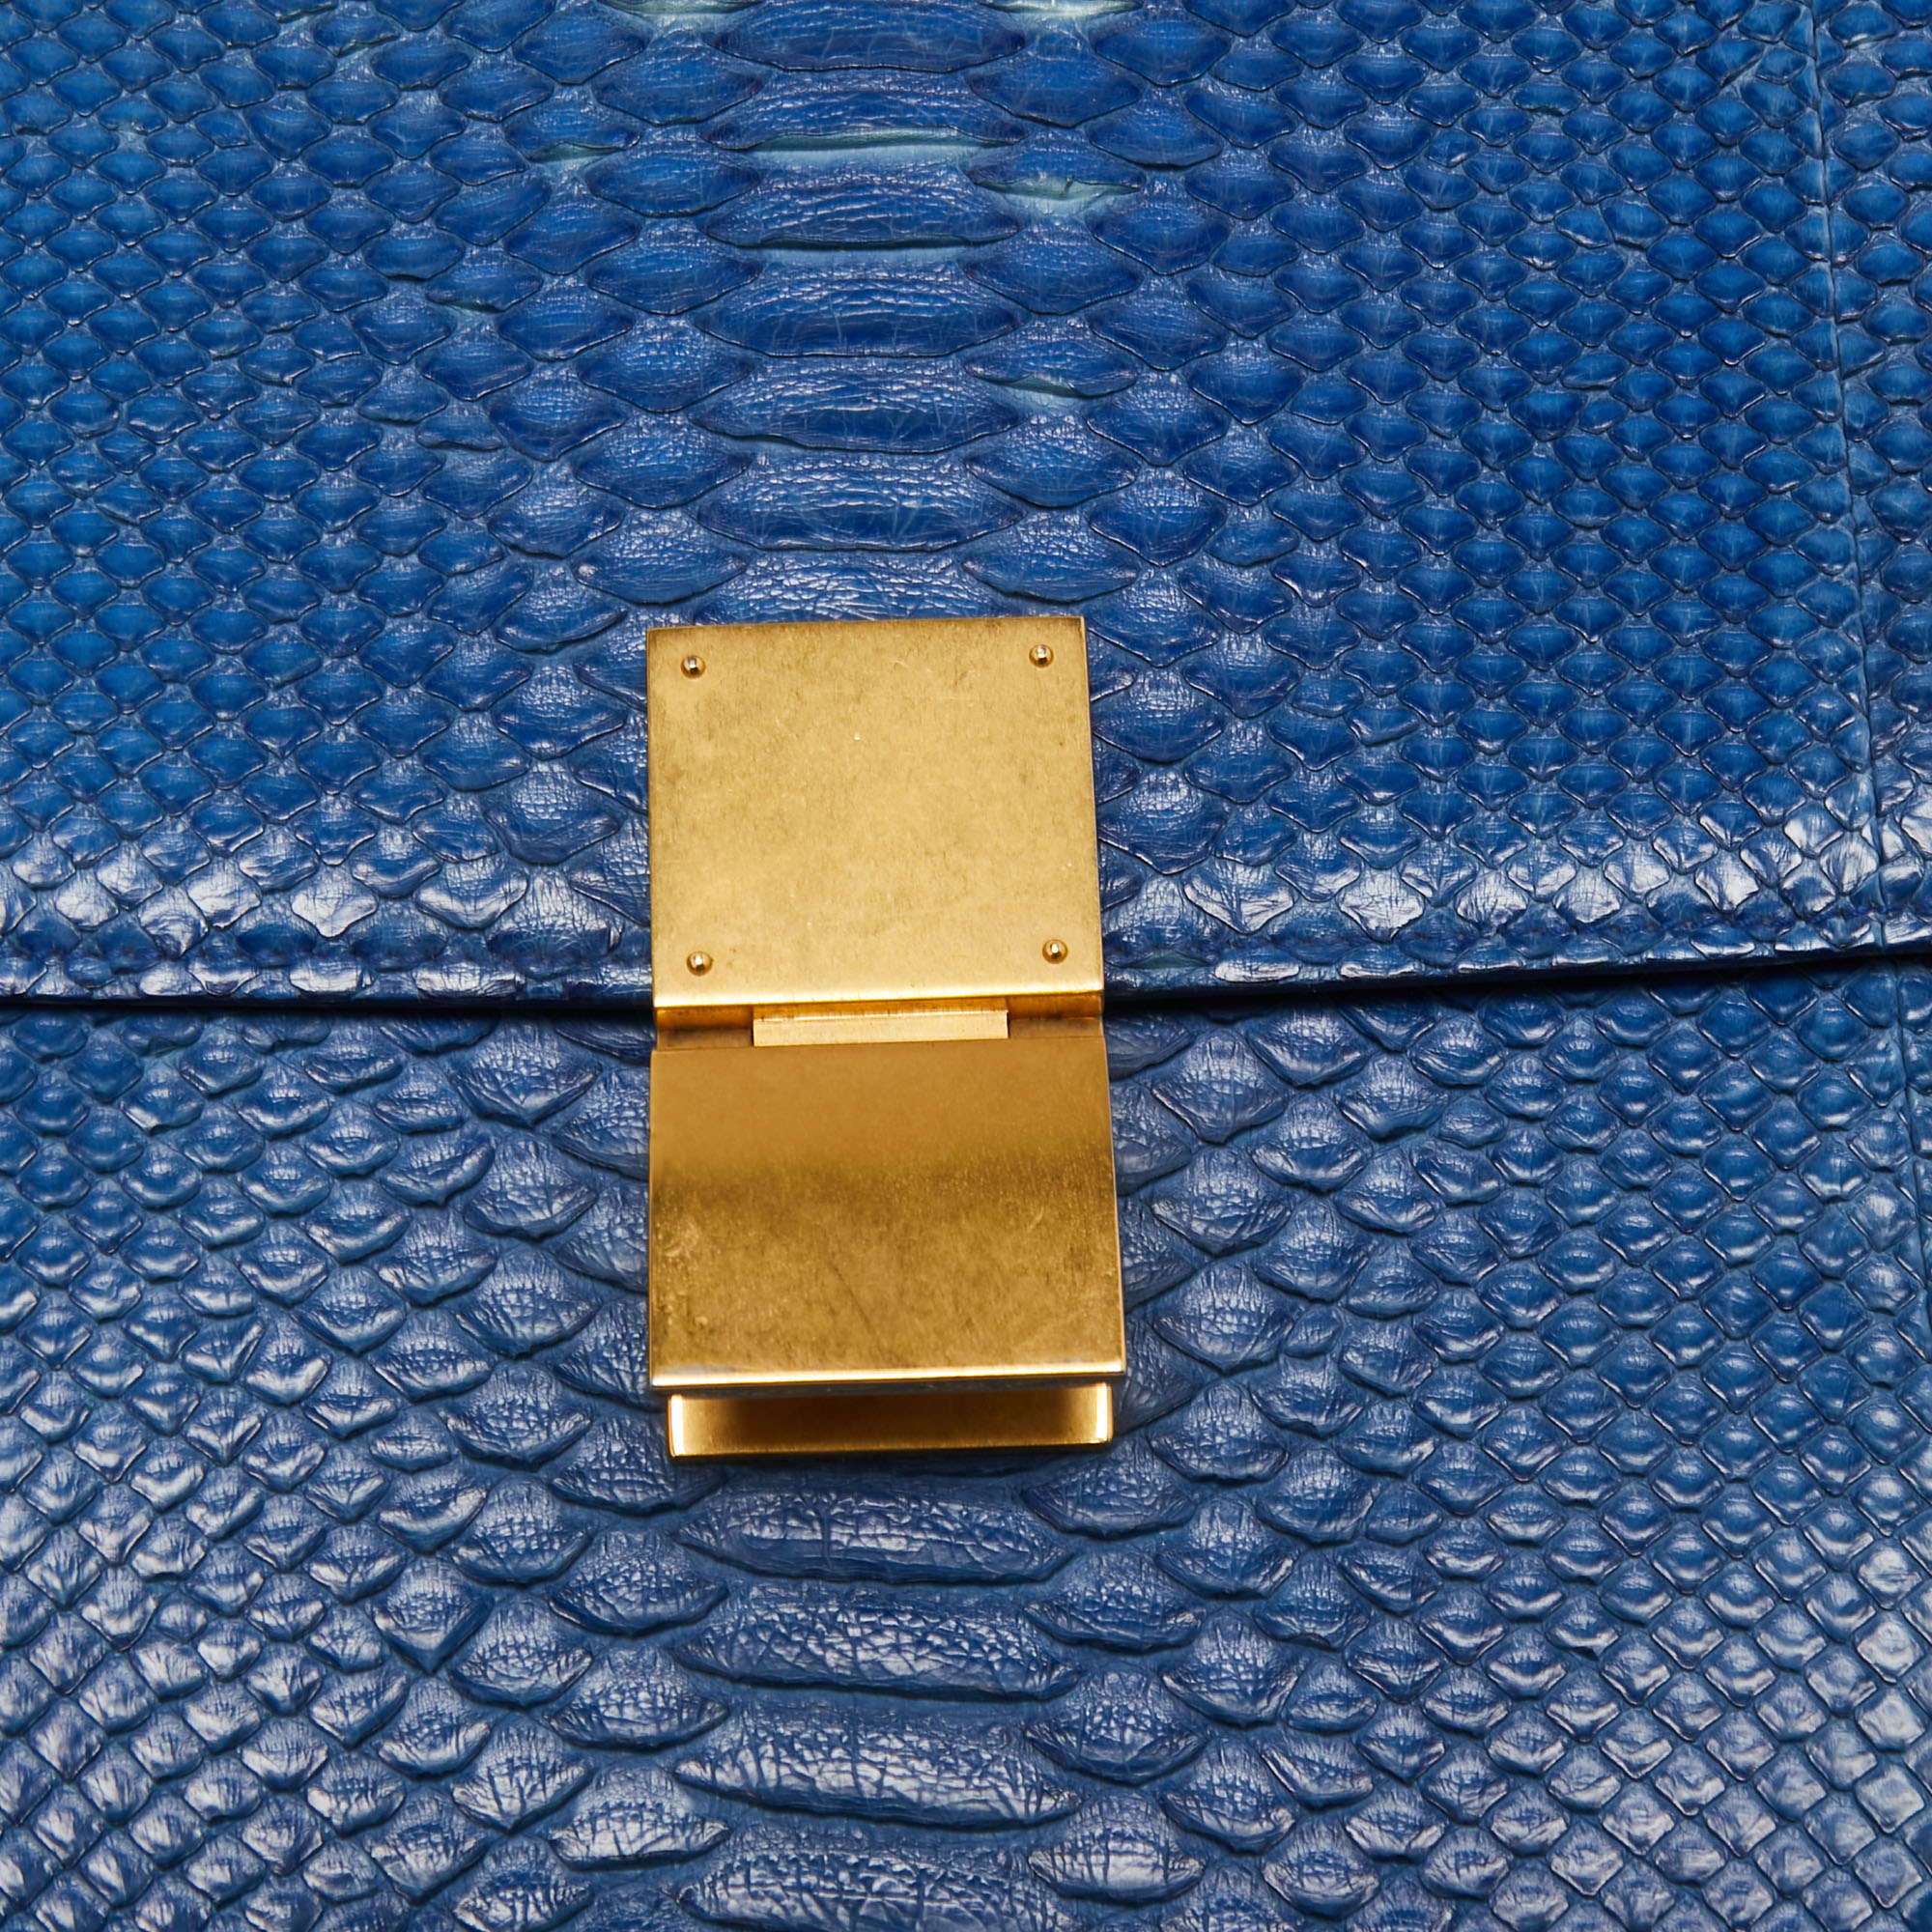 Celine Blue Python Large Classic Box Shoulder Bag